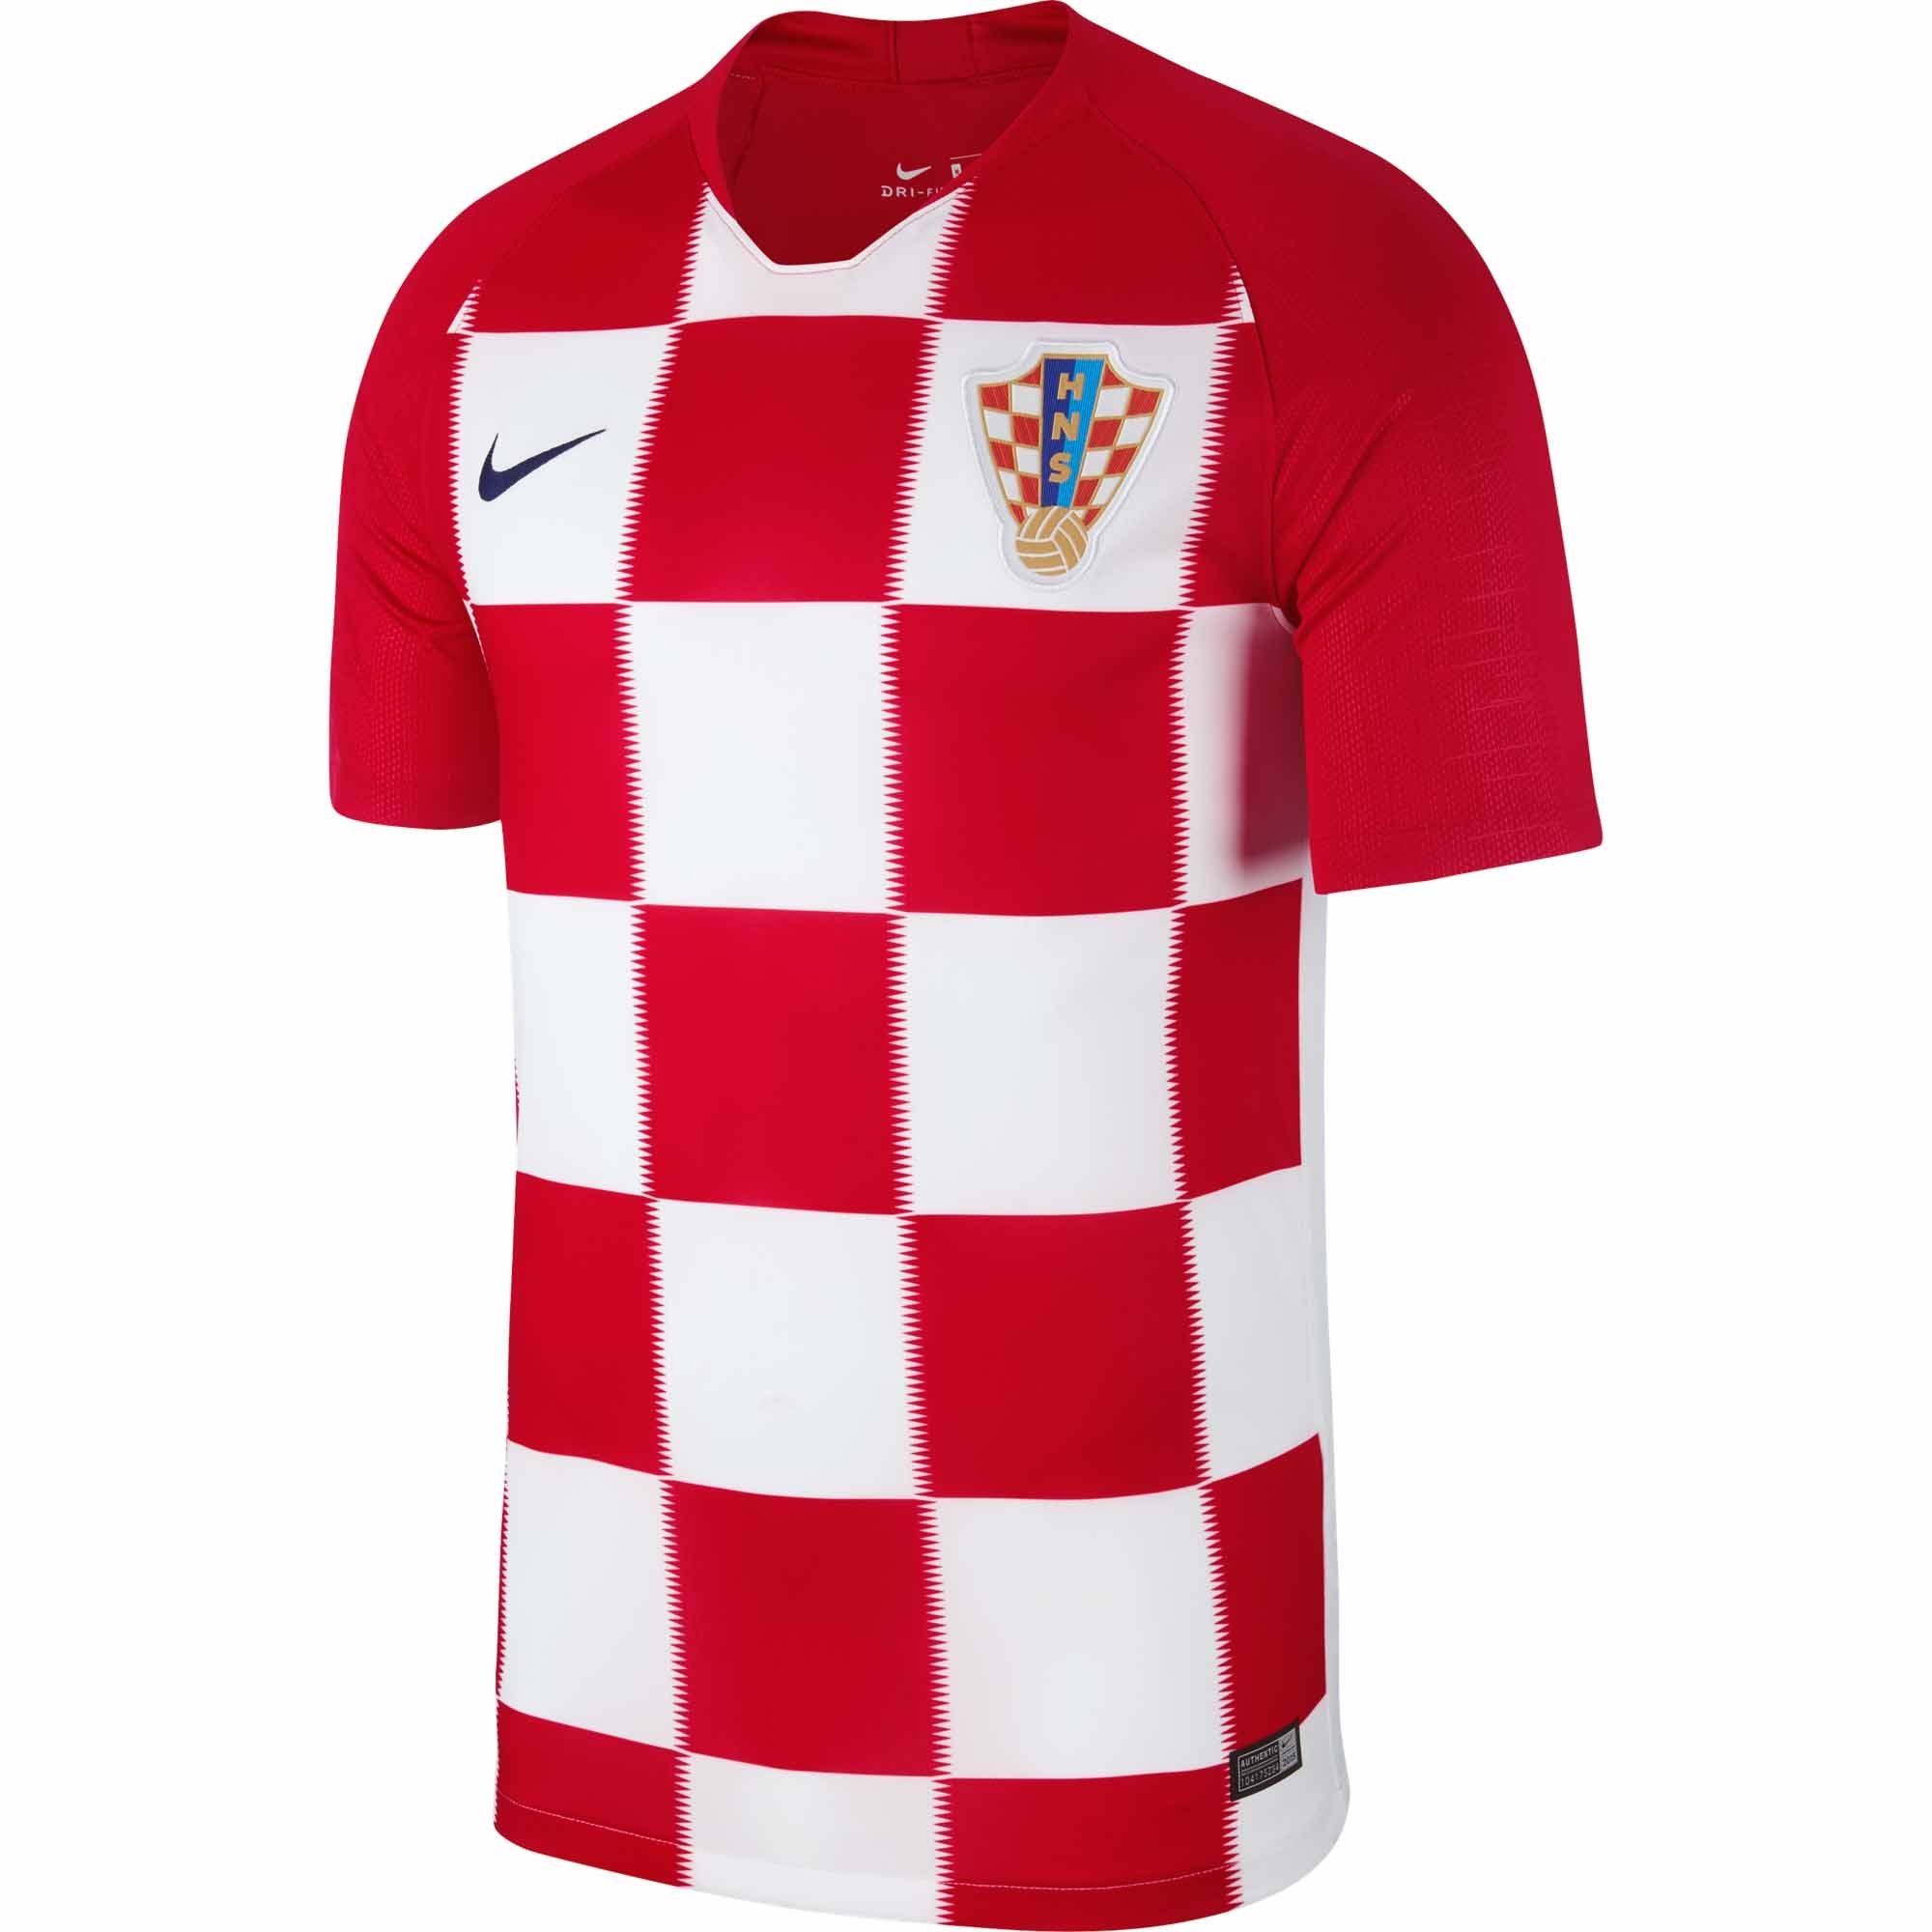 croatian soccer jersey australia